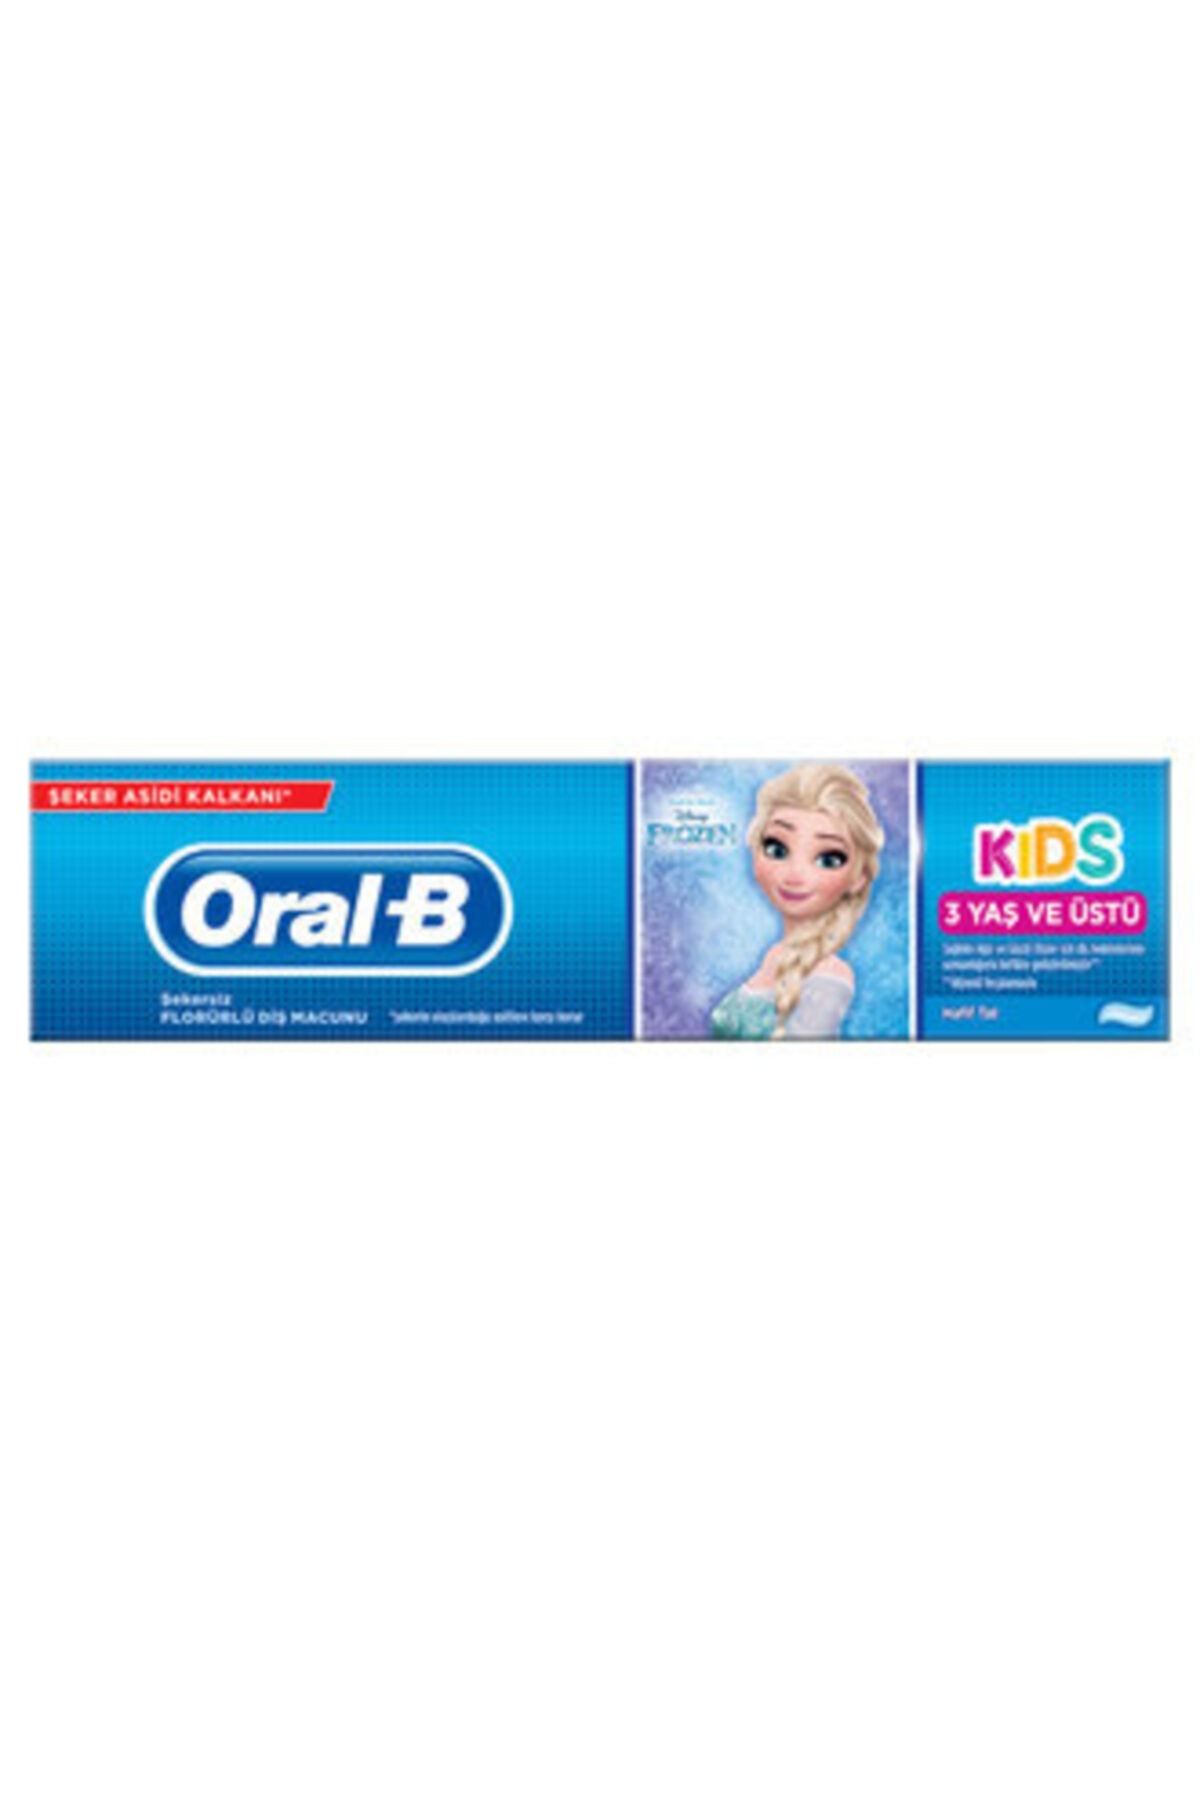 Oral-B Oral B Frozen Çocuk Diş Macunu 75 Ml 3 Yaş Ve Üstü